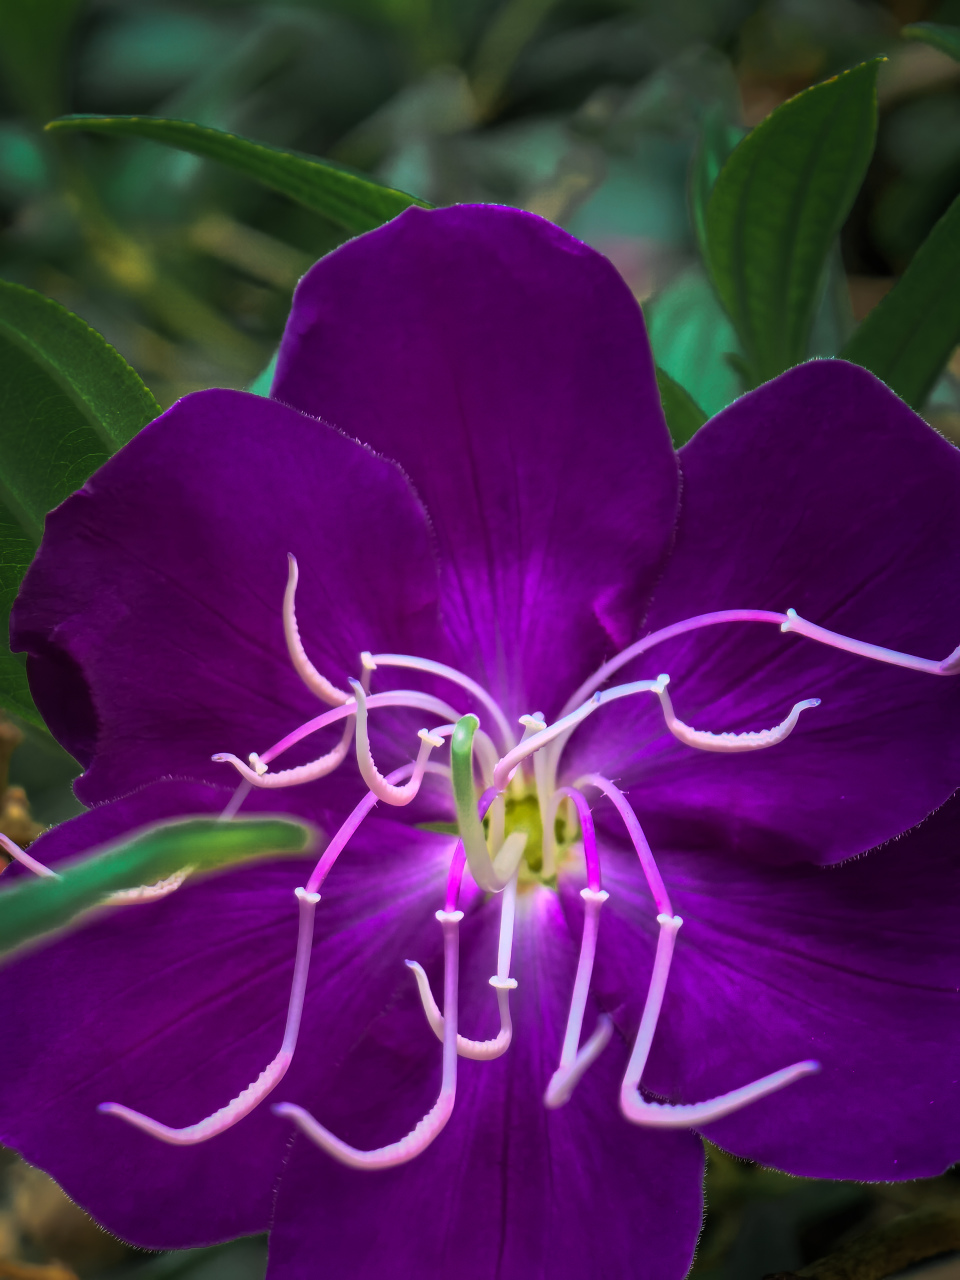 巴西野牡丹,这种艳丽的紫色花朵在巴西被称为公主花